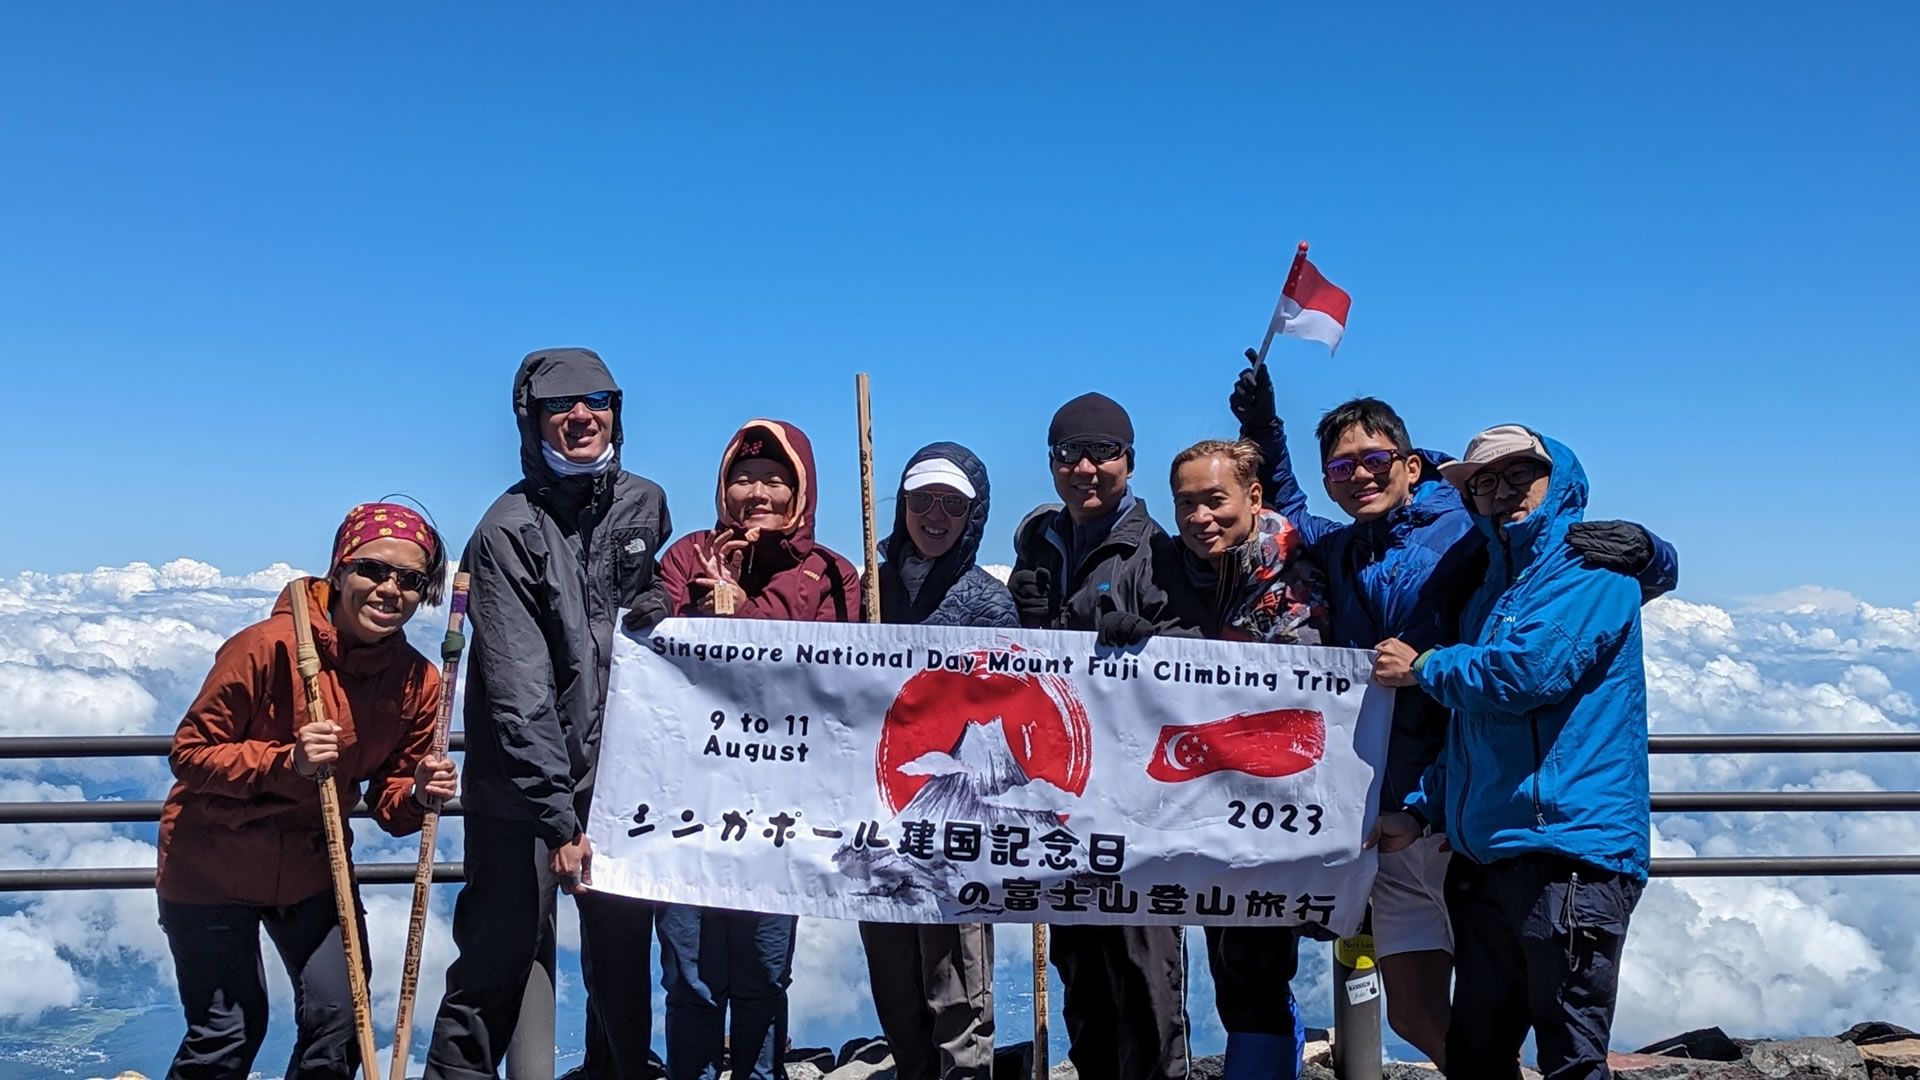 Climbing Mount Fuji with 7 Friends